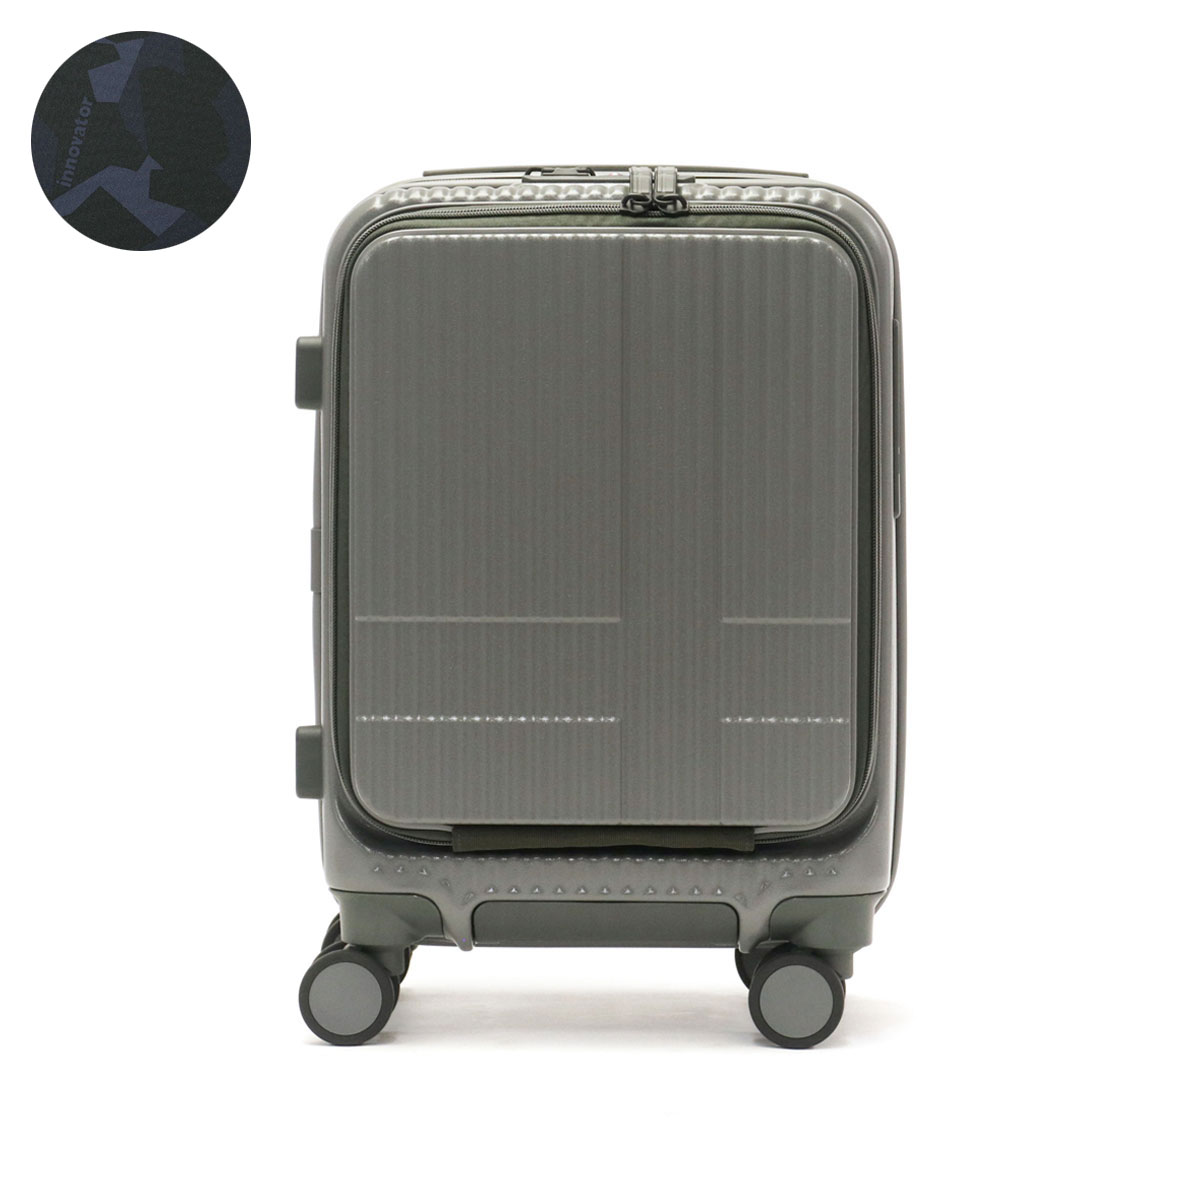 イノベーター innovator スーツケース グレー 便利 コンパクト お洒落 